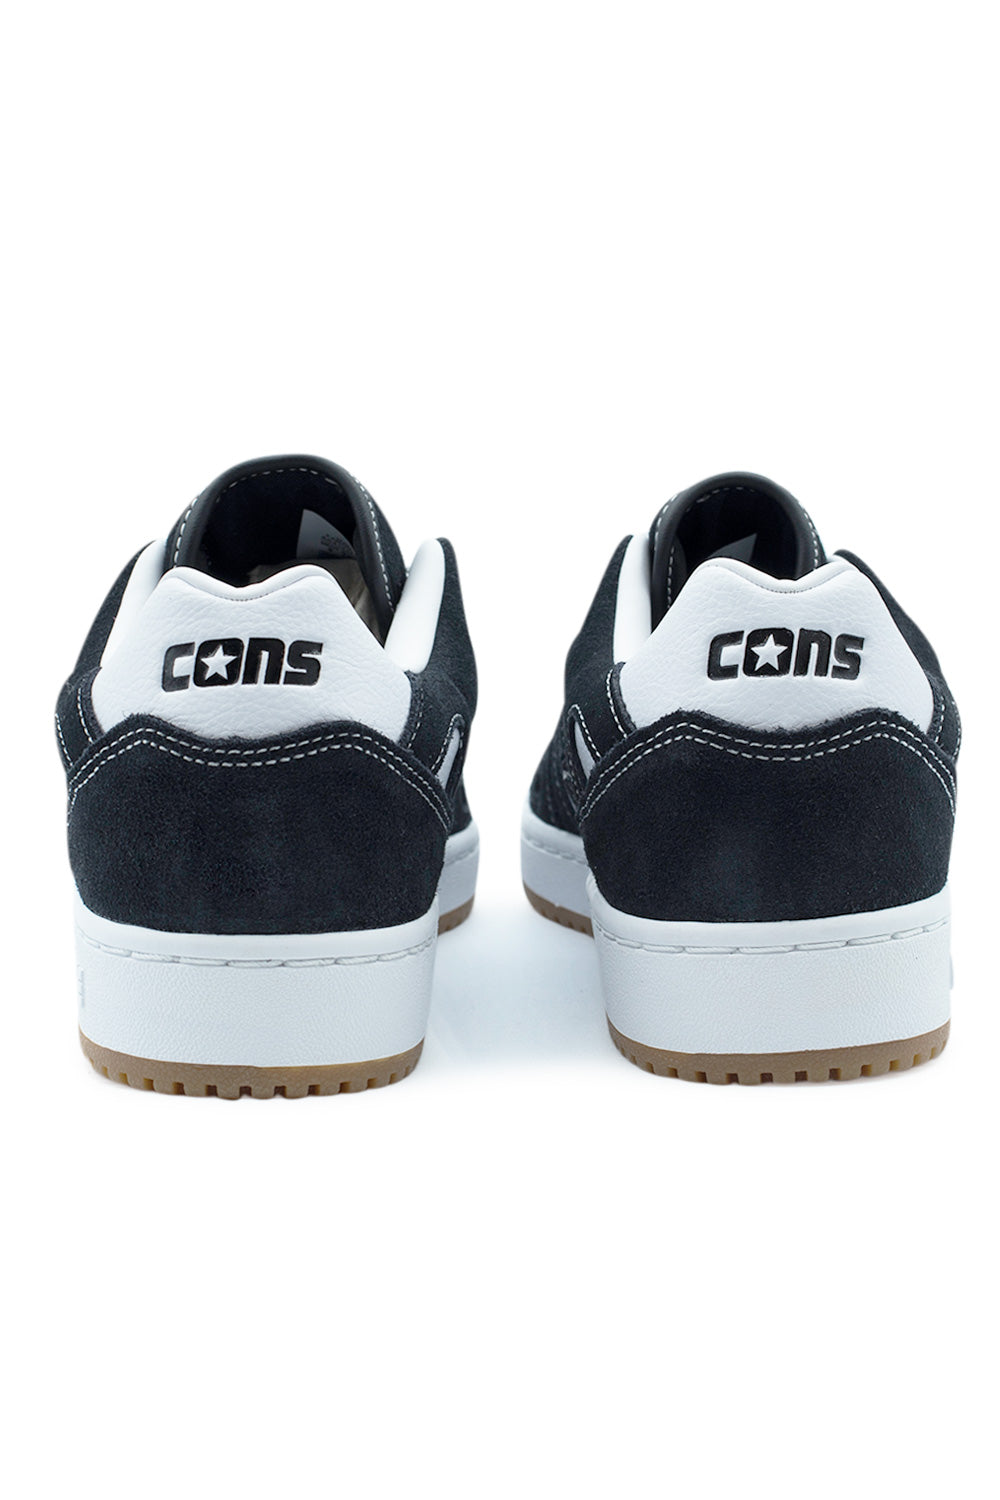 Converse CONS AS-1 PRO OX Shoe Black / White / Gum - BONKERS